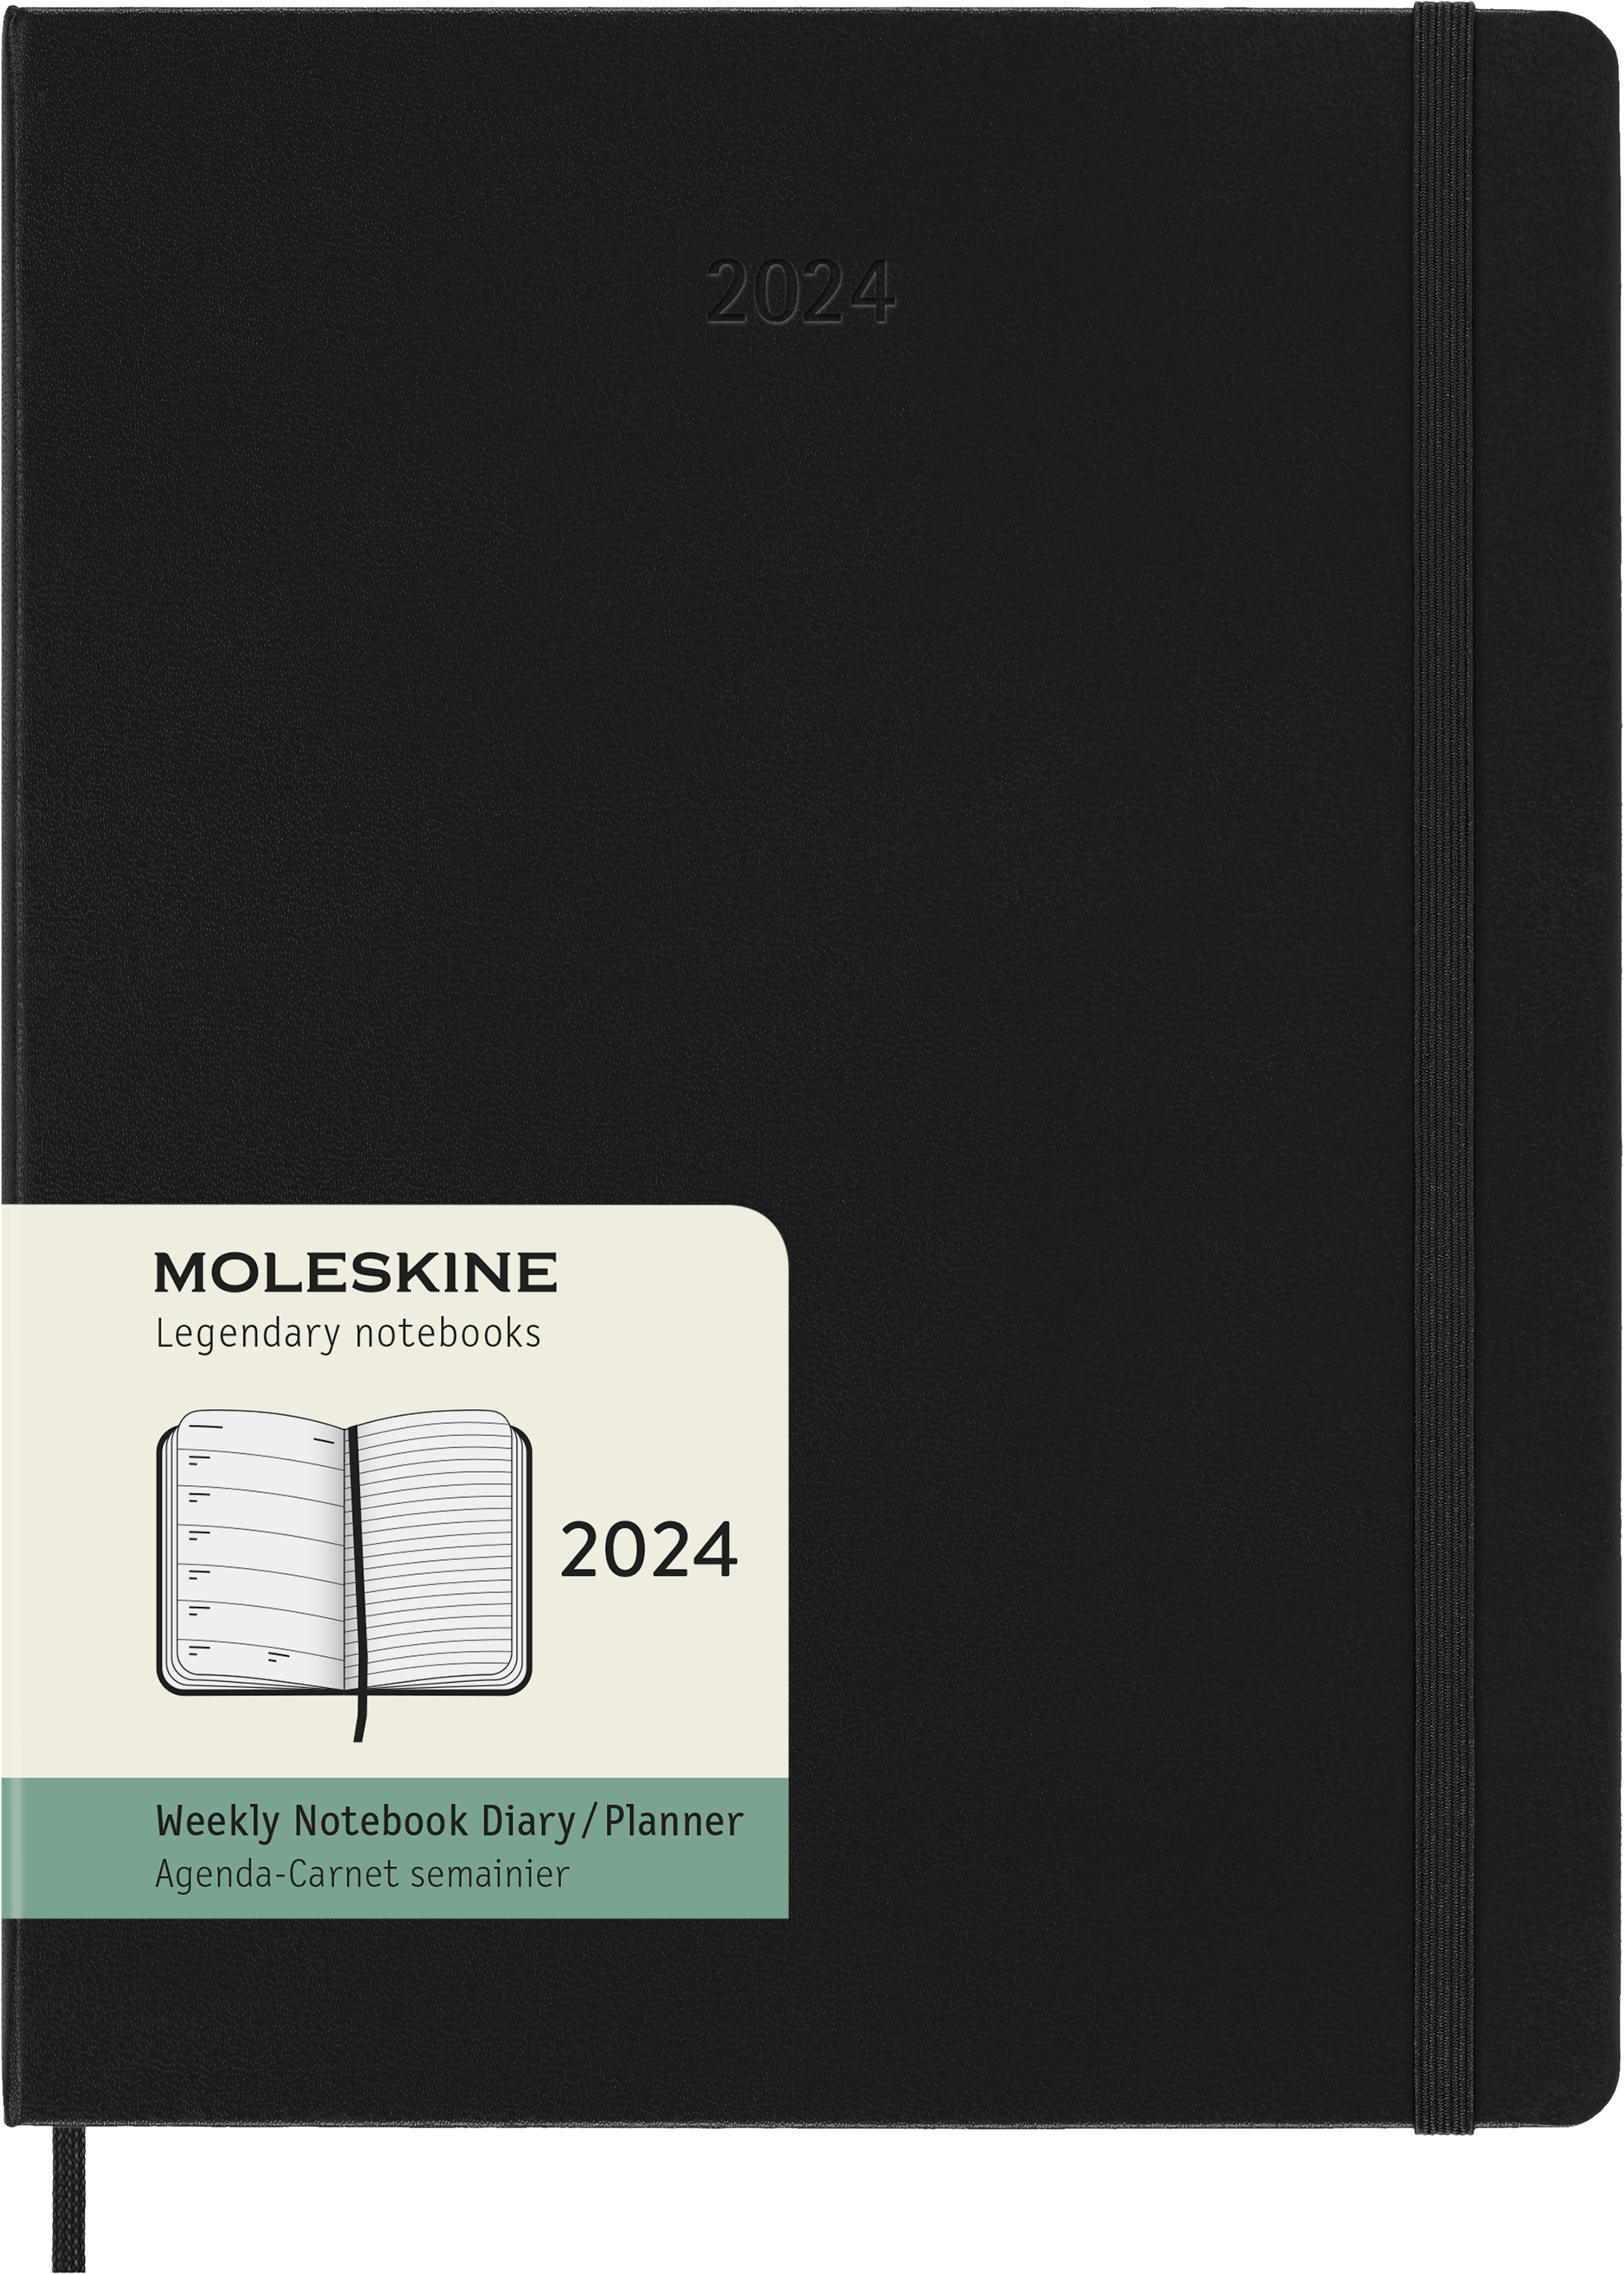 Moleskine 2024 agenda hardcover x-large week